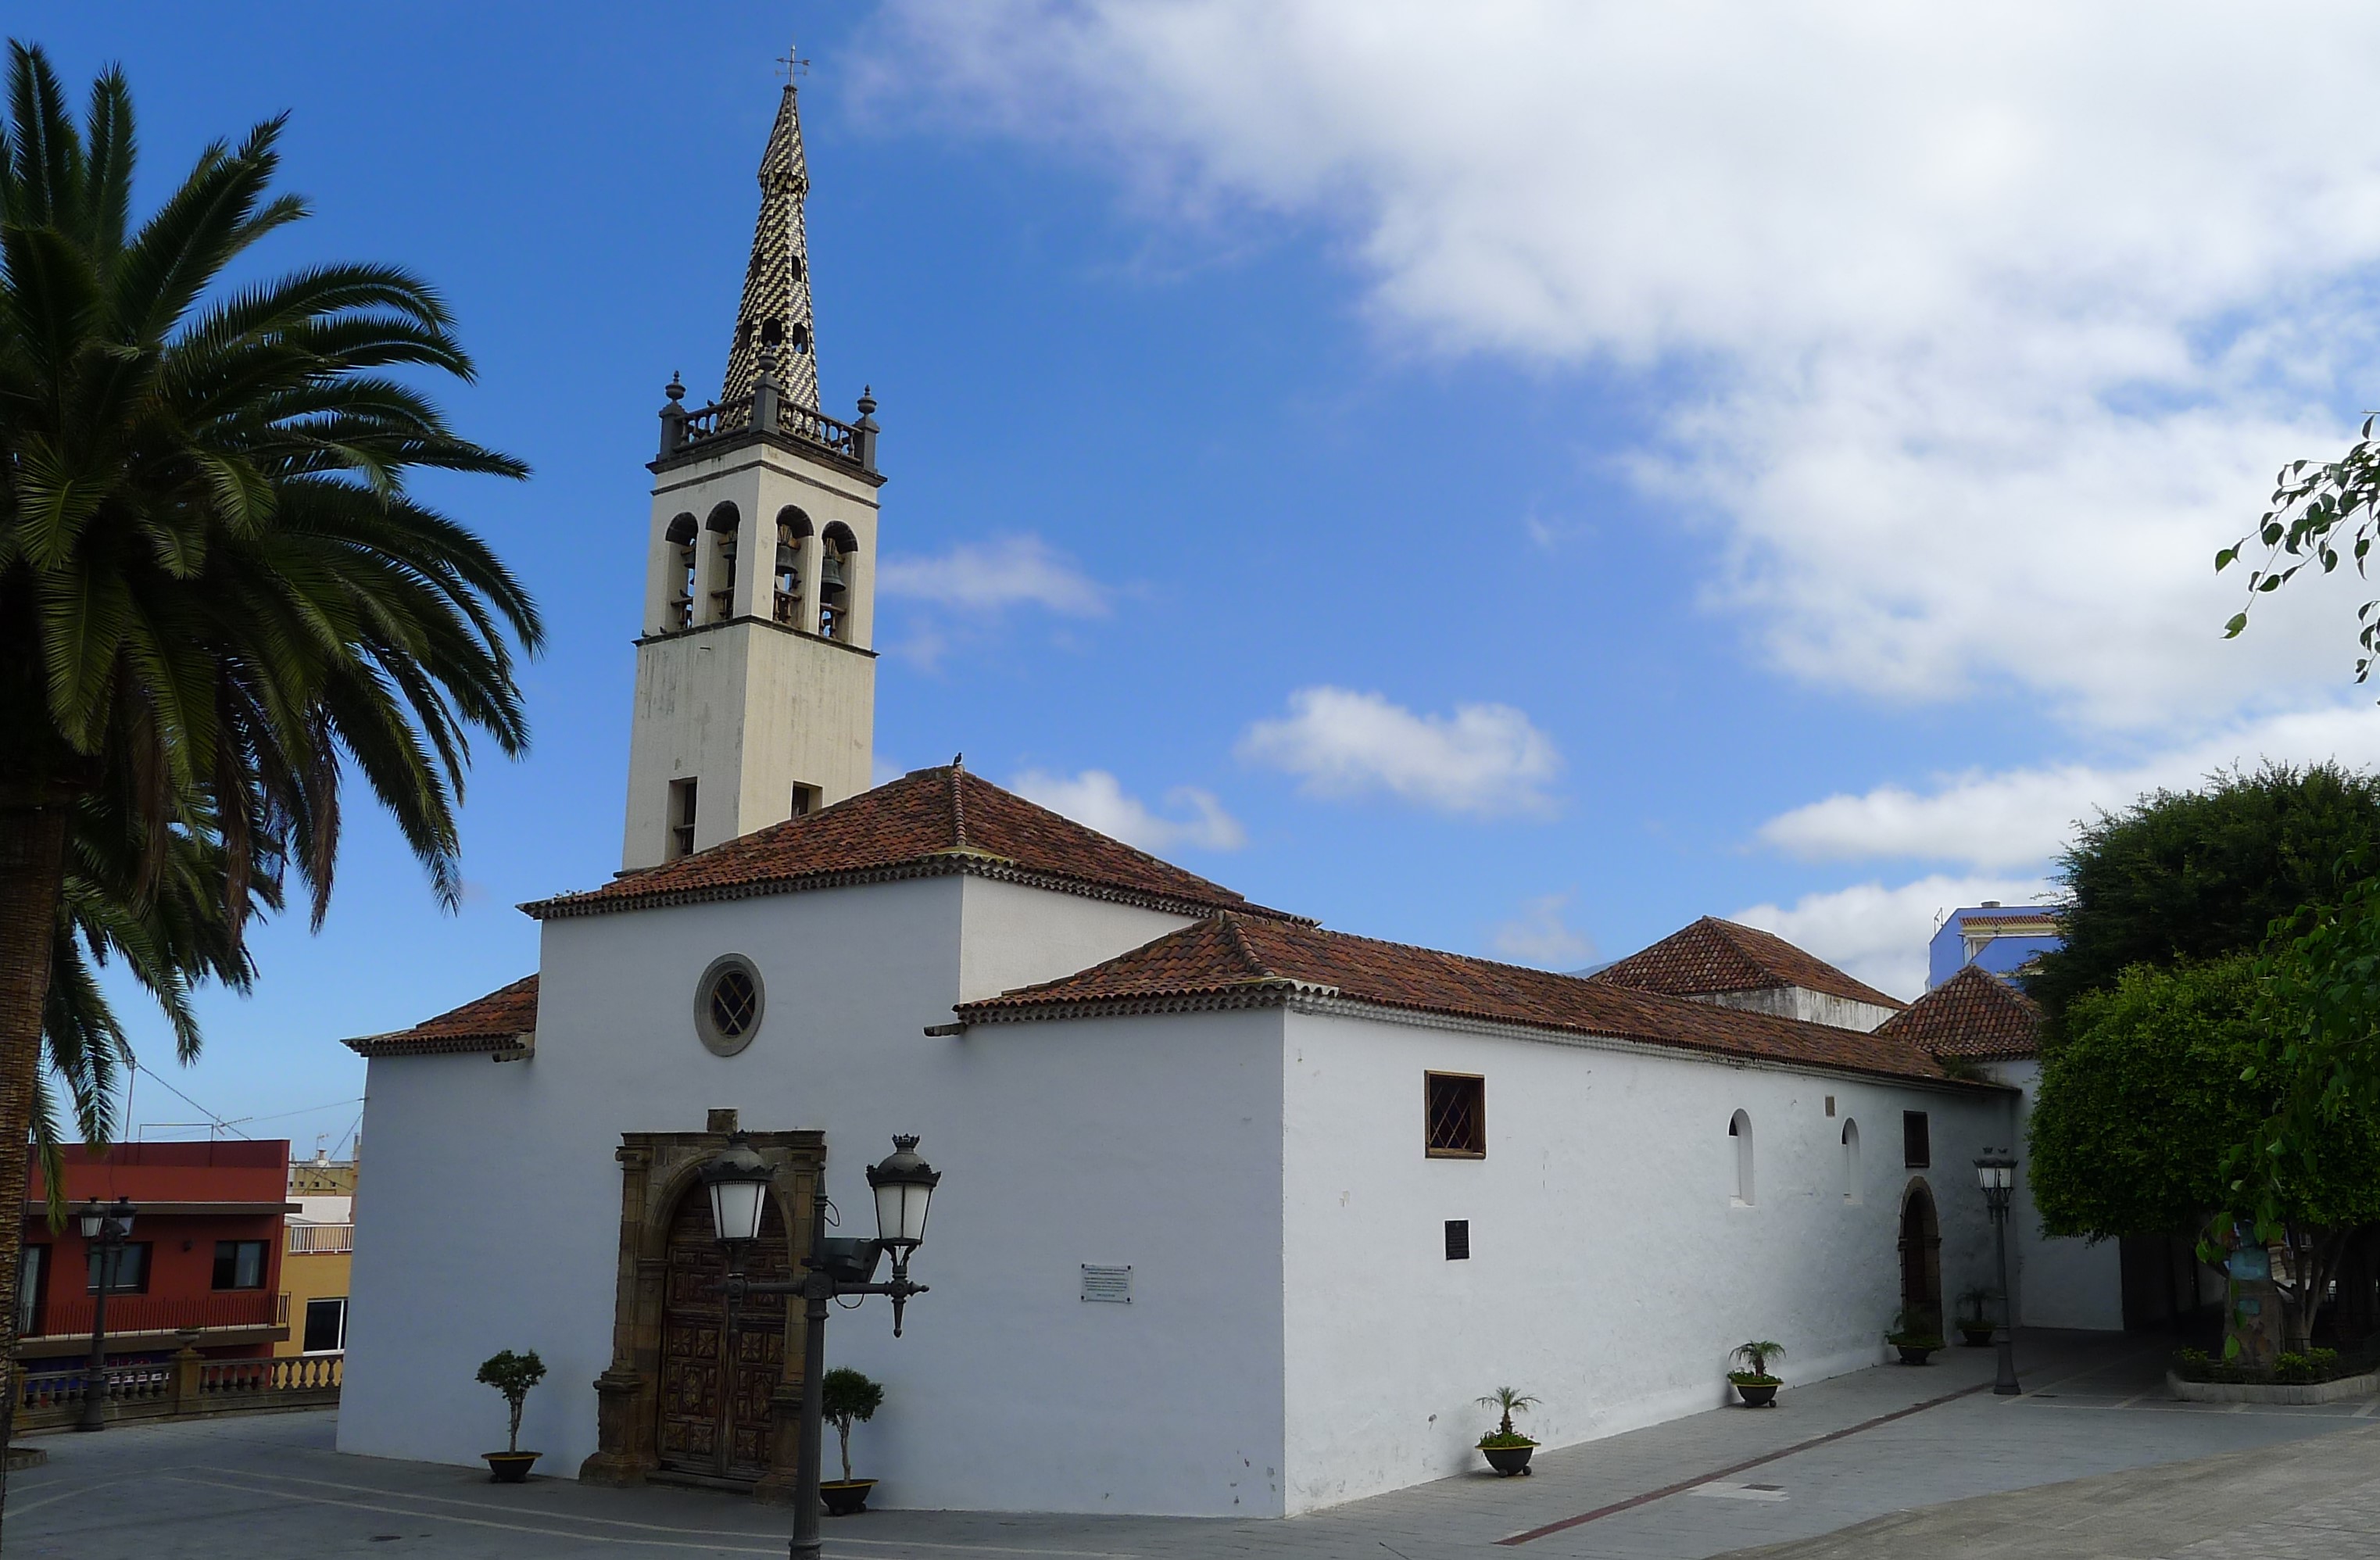 Iglesia de Santiago Apóstol (Church of Saint James the Apostle) - BIC (Asset of Cultural Interest) Monument